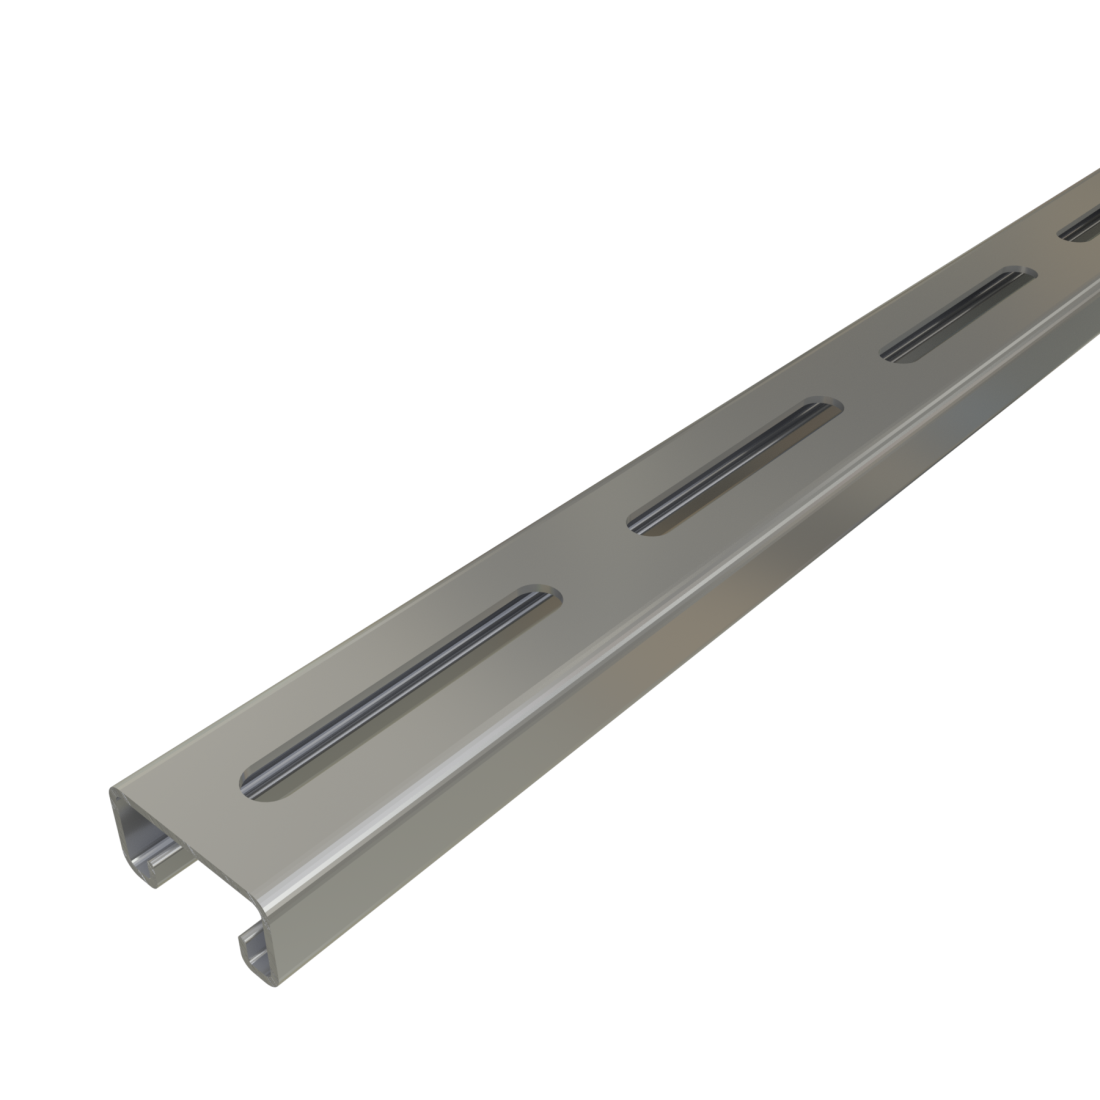 Unistrut P4100SL - 1-5/8" x 13/16", 14 Gauge Metal Framing Strut, Long Slots